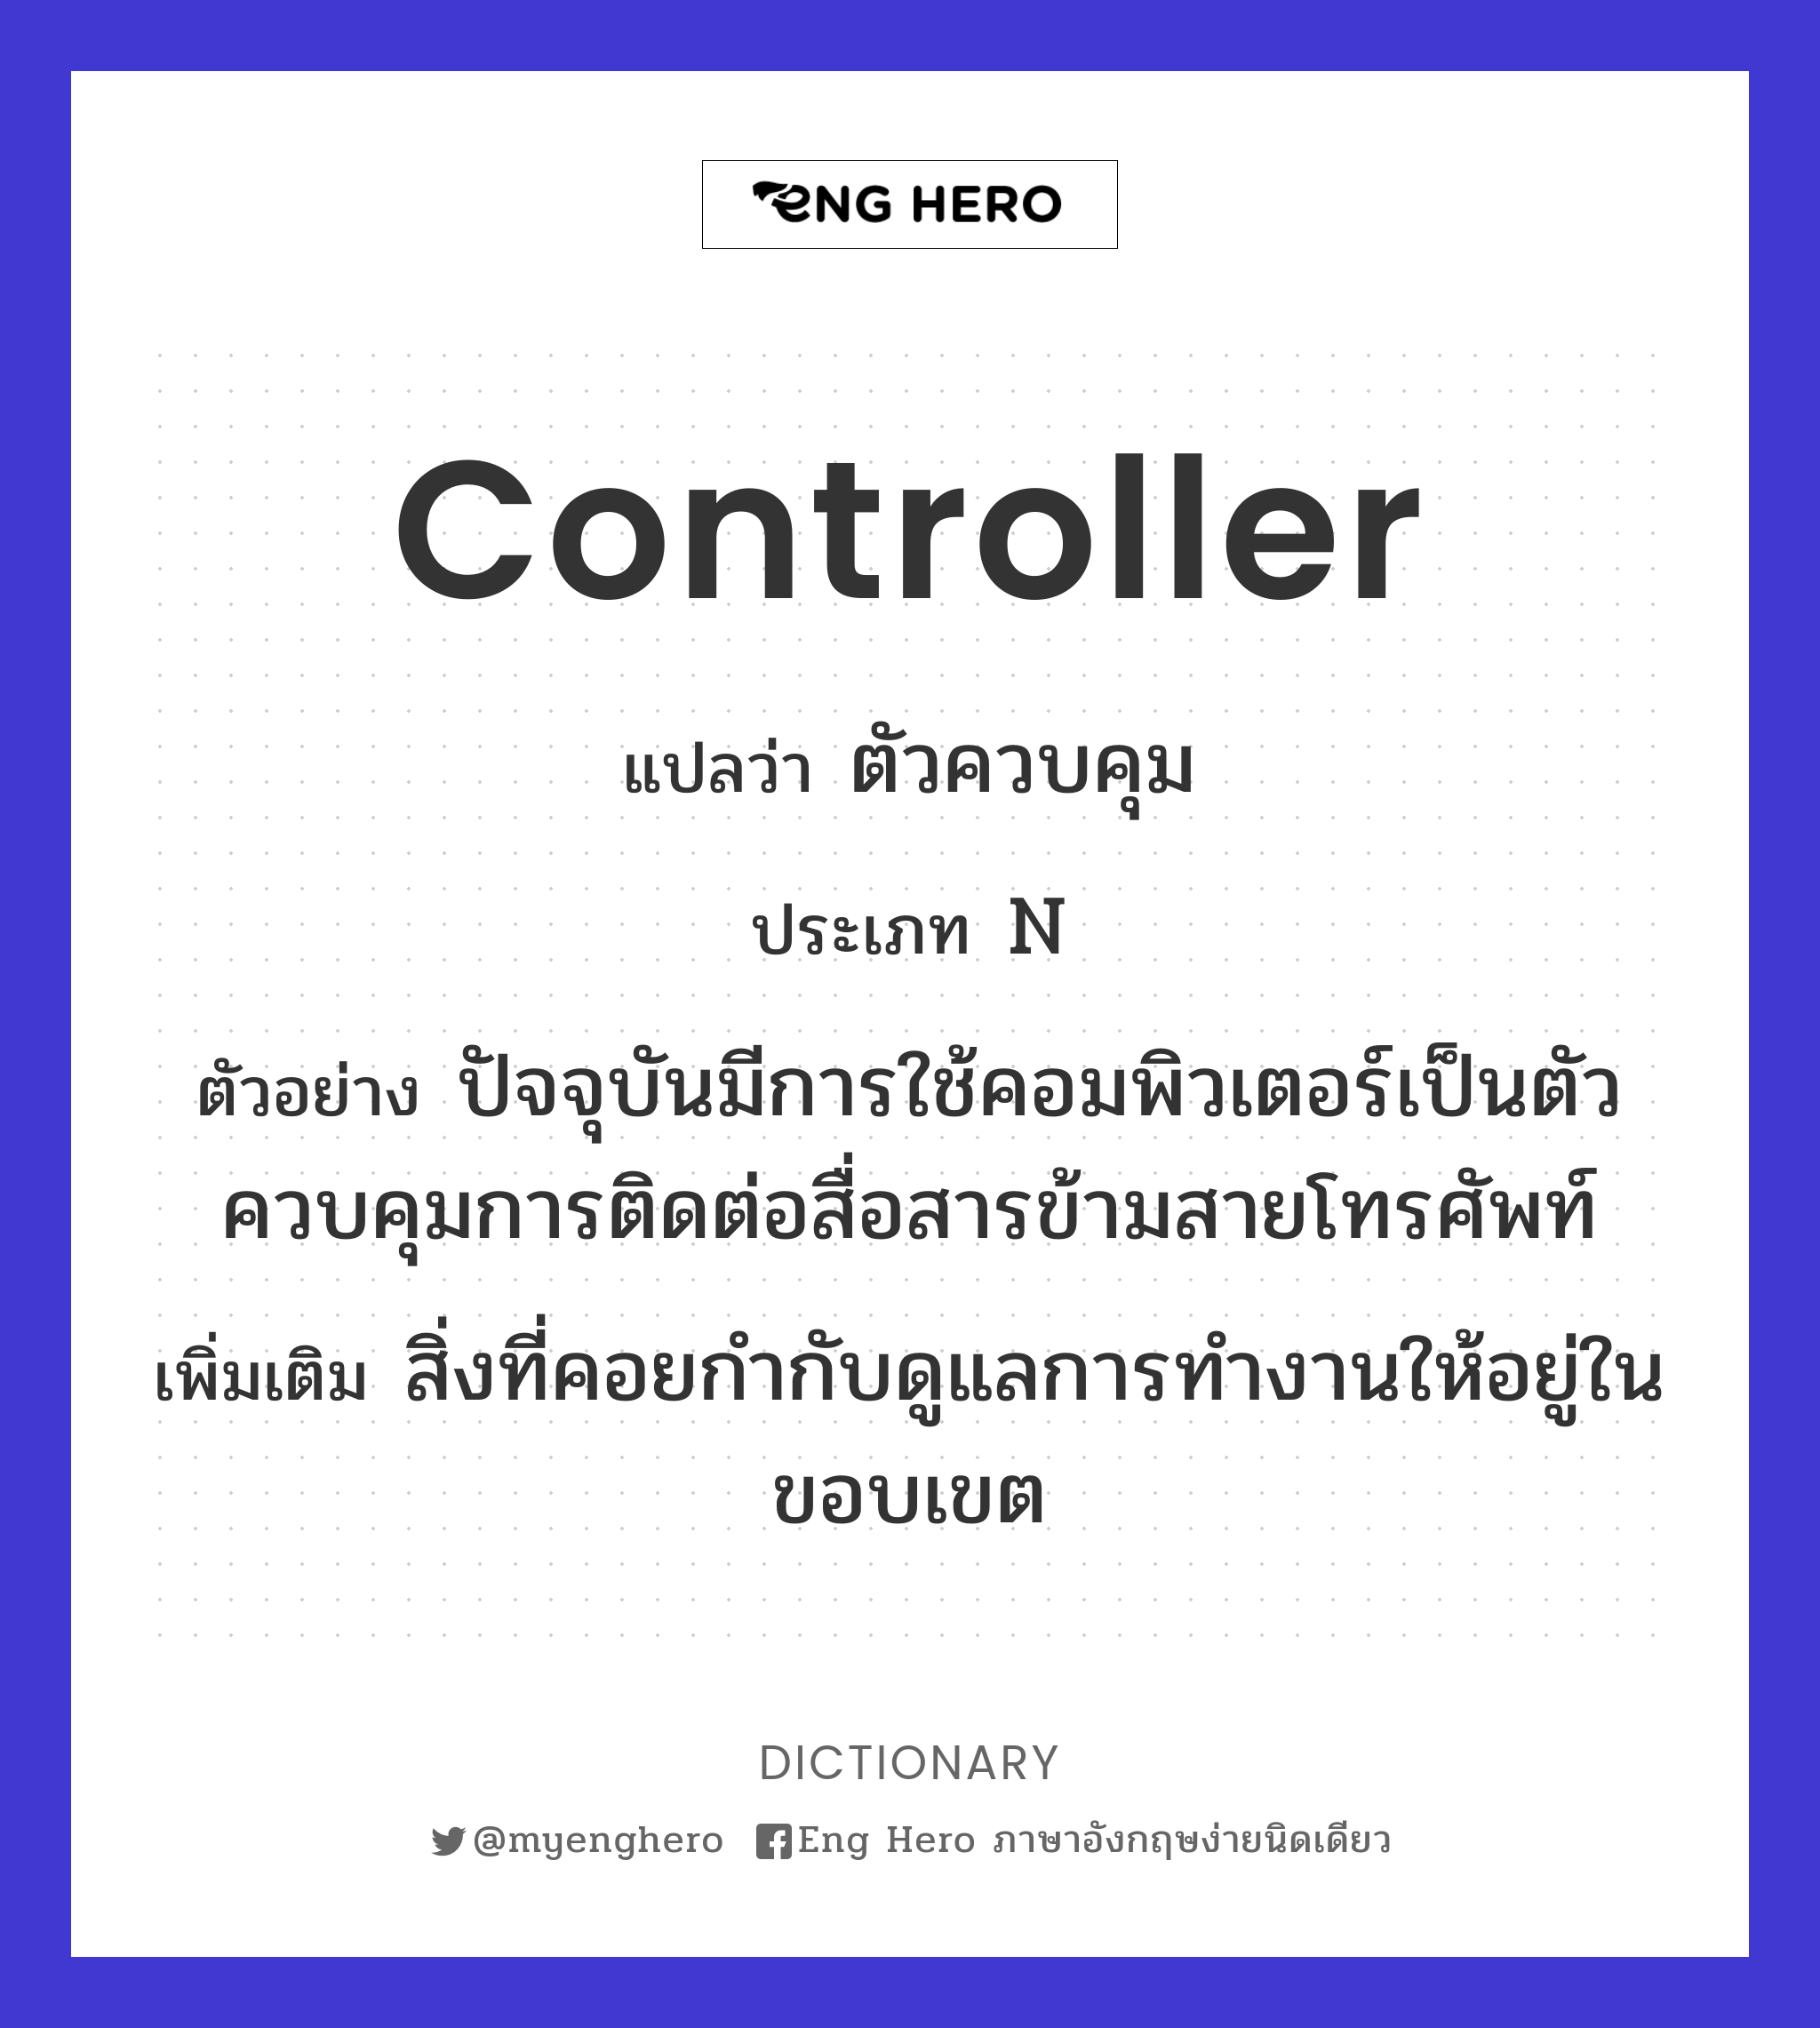 controller